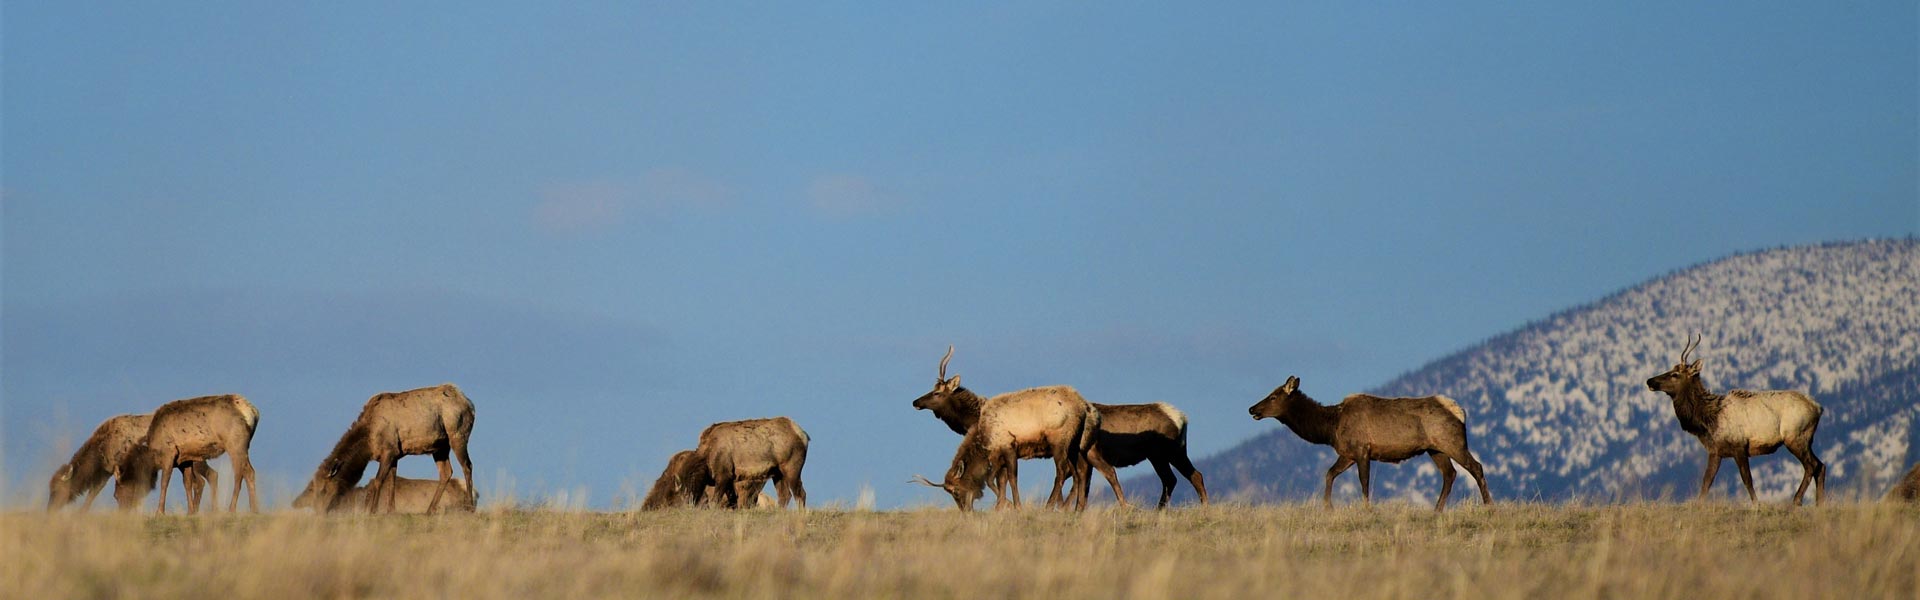 A herd of elk in a field